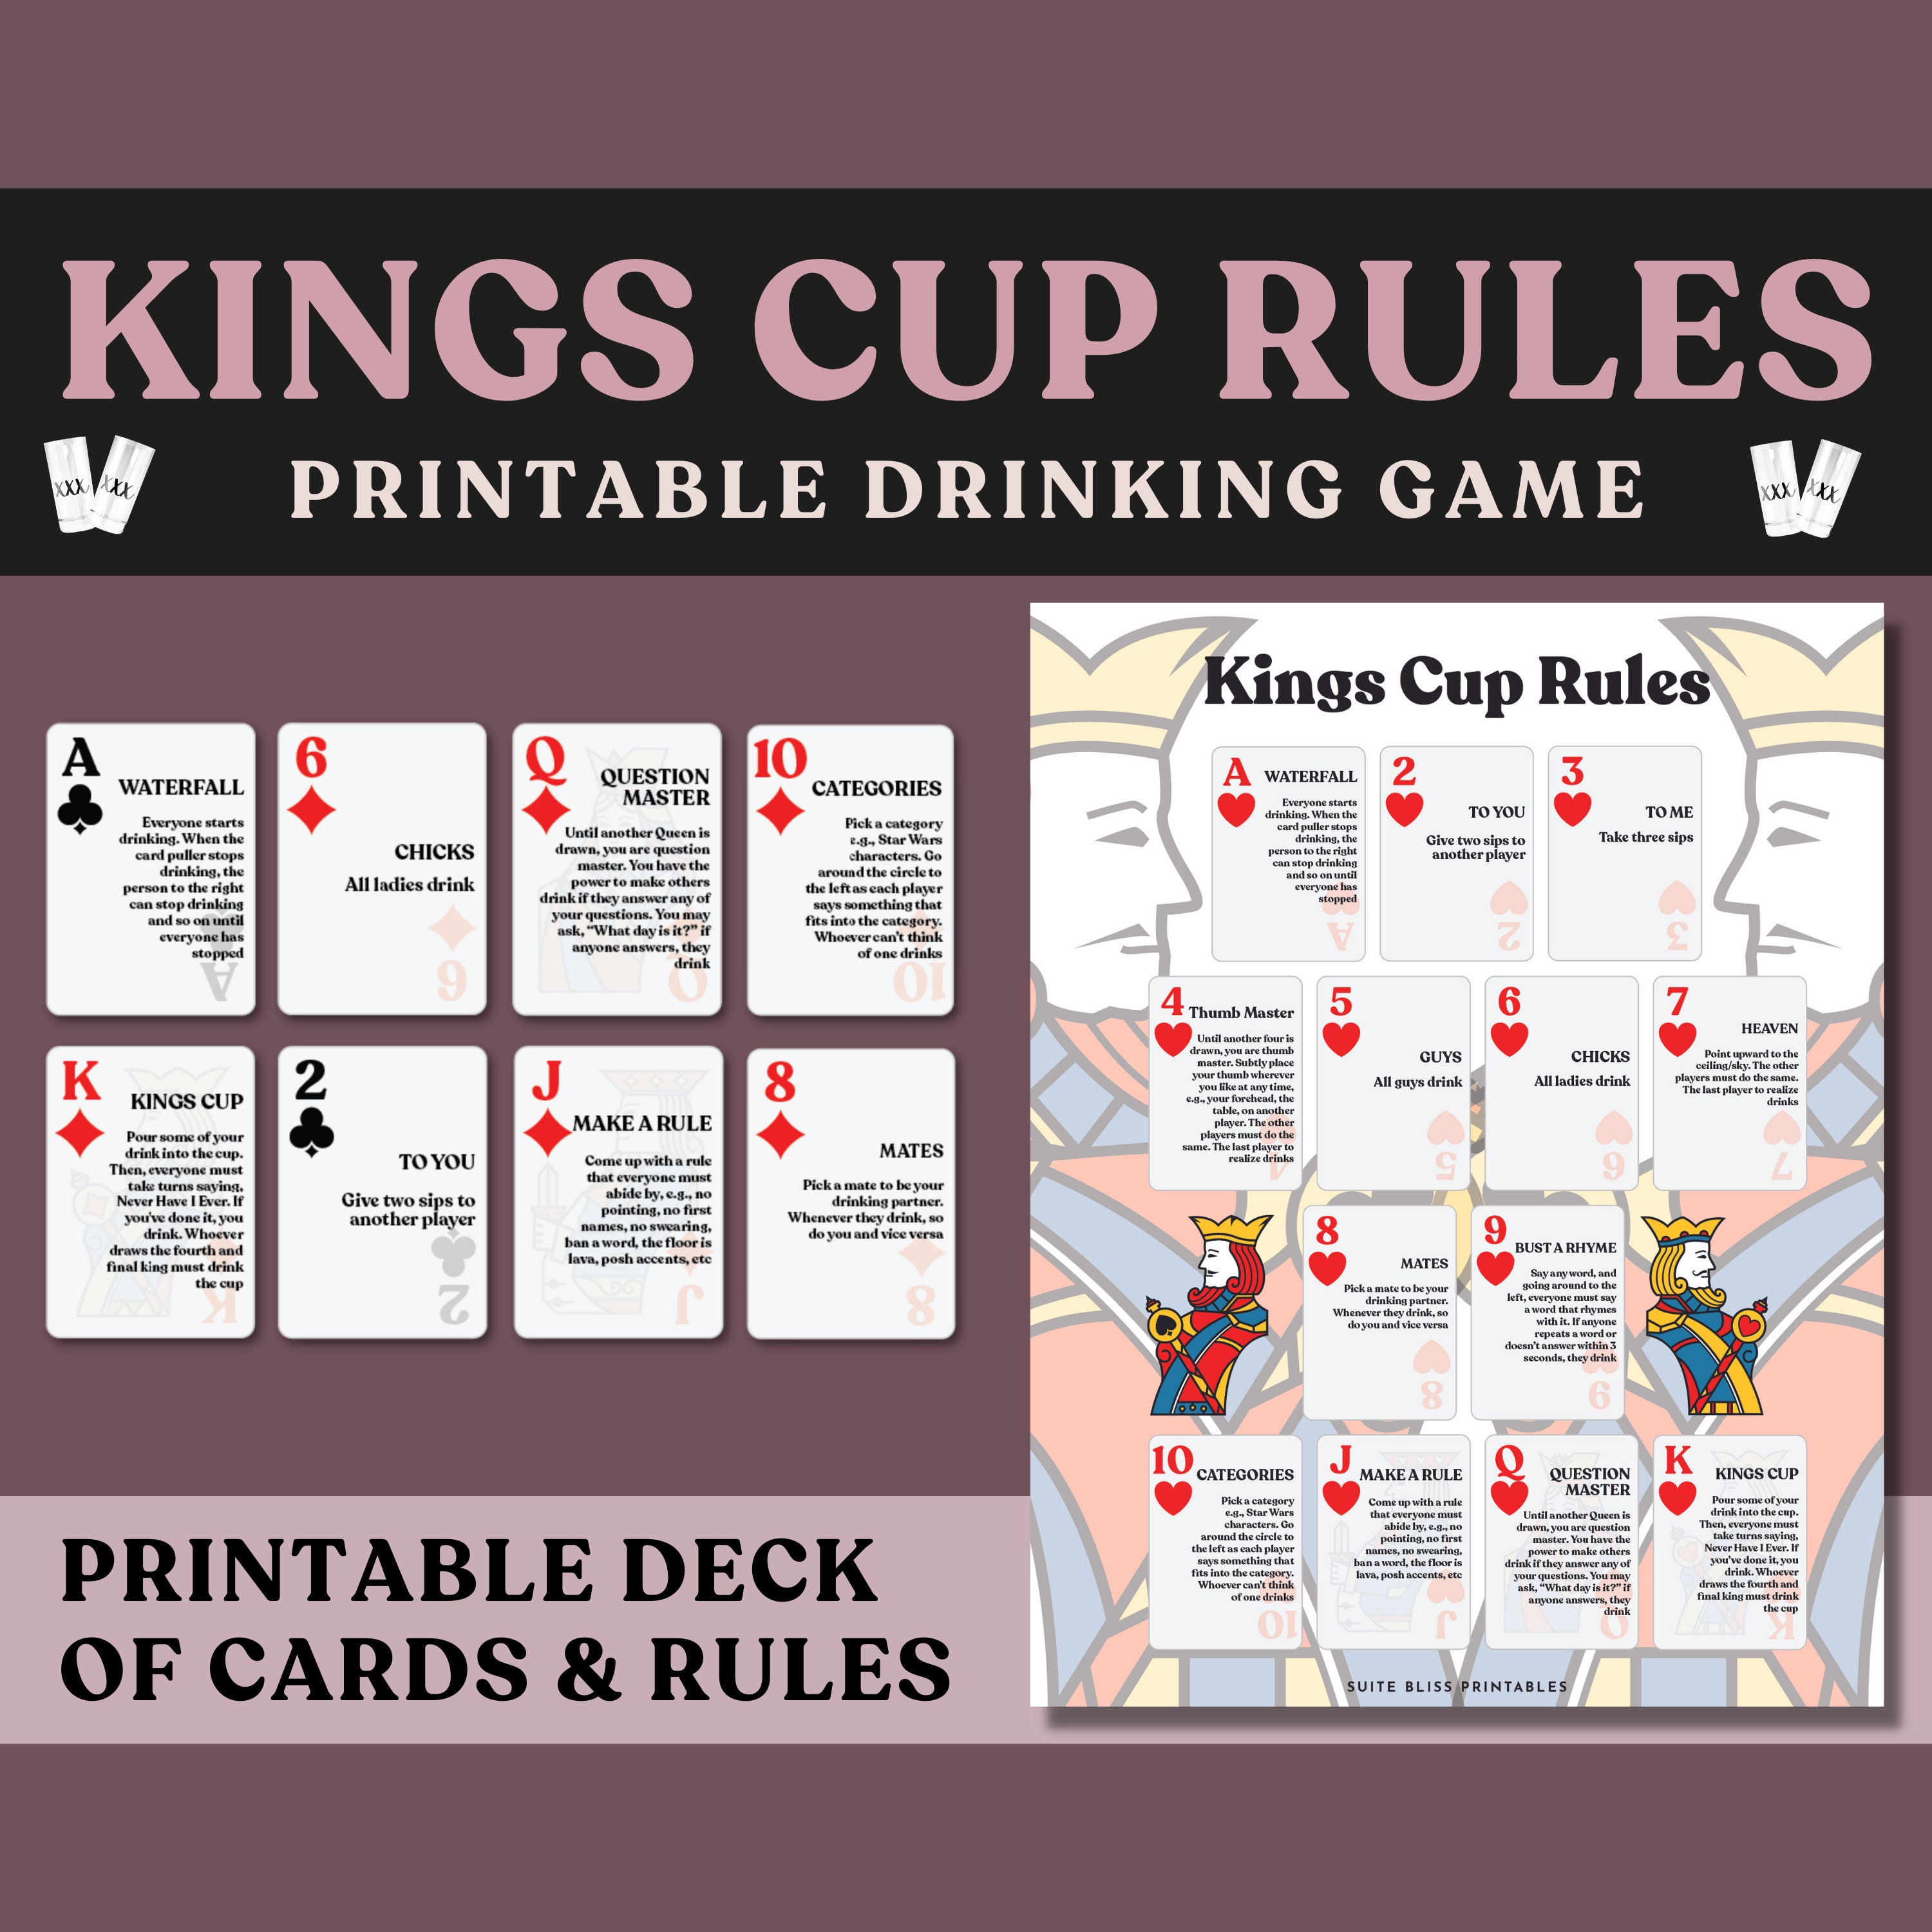 Kings Cup Rules Print Version